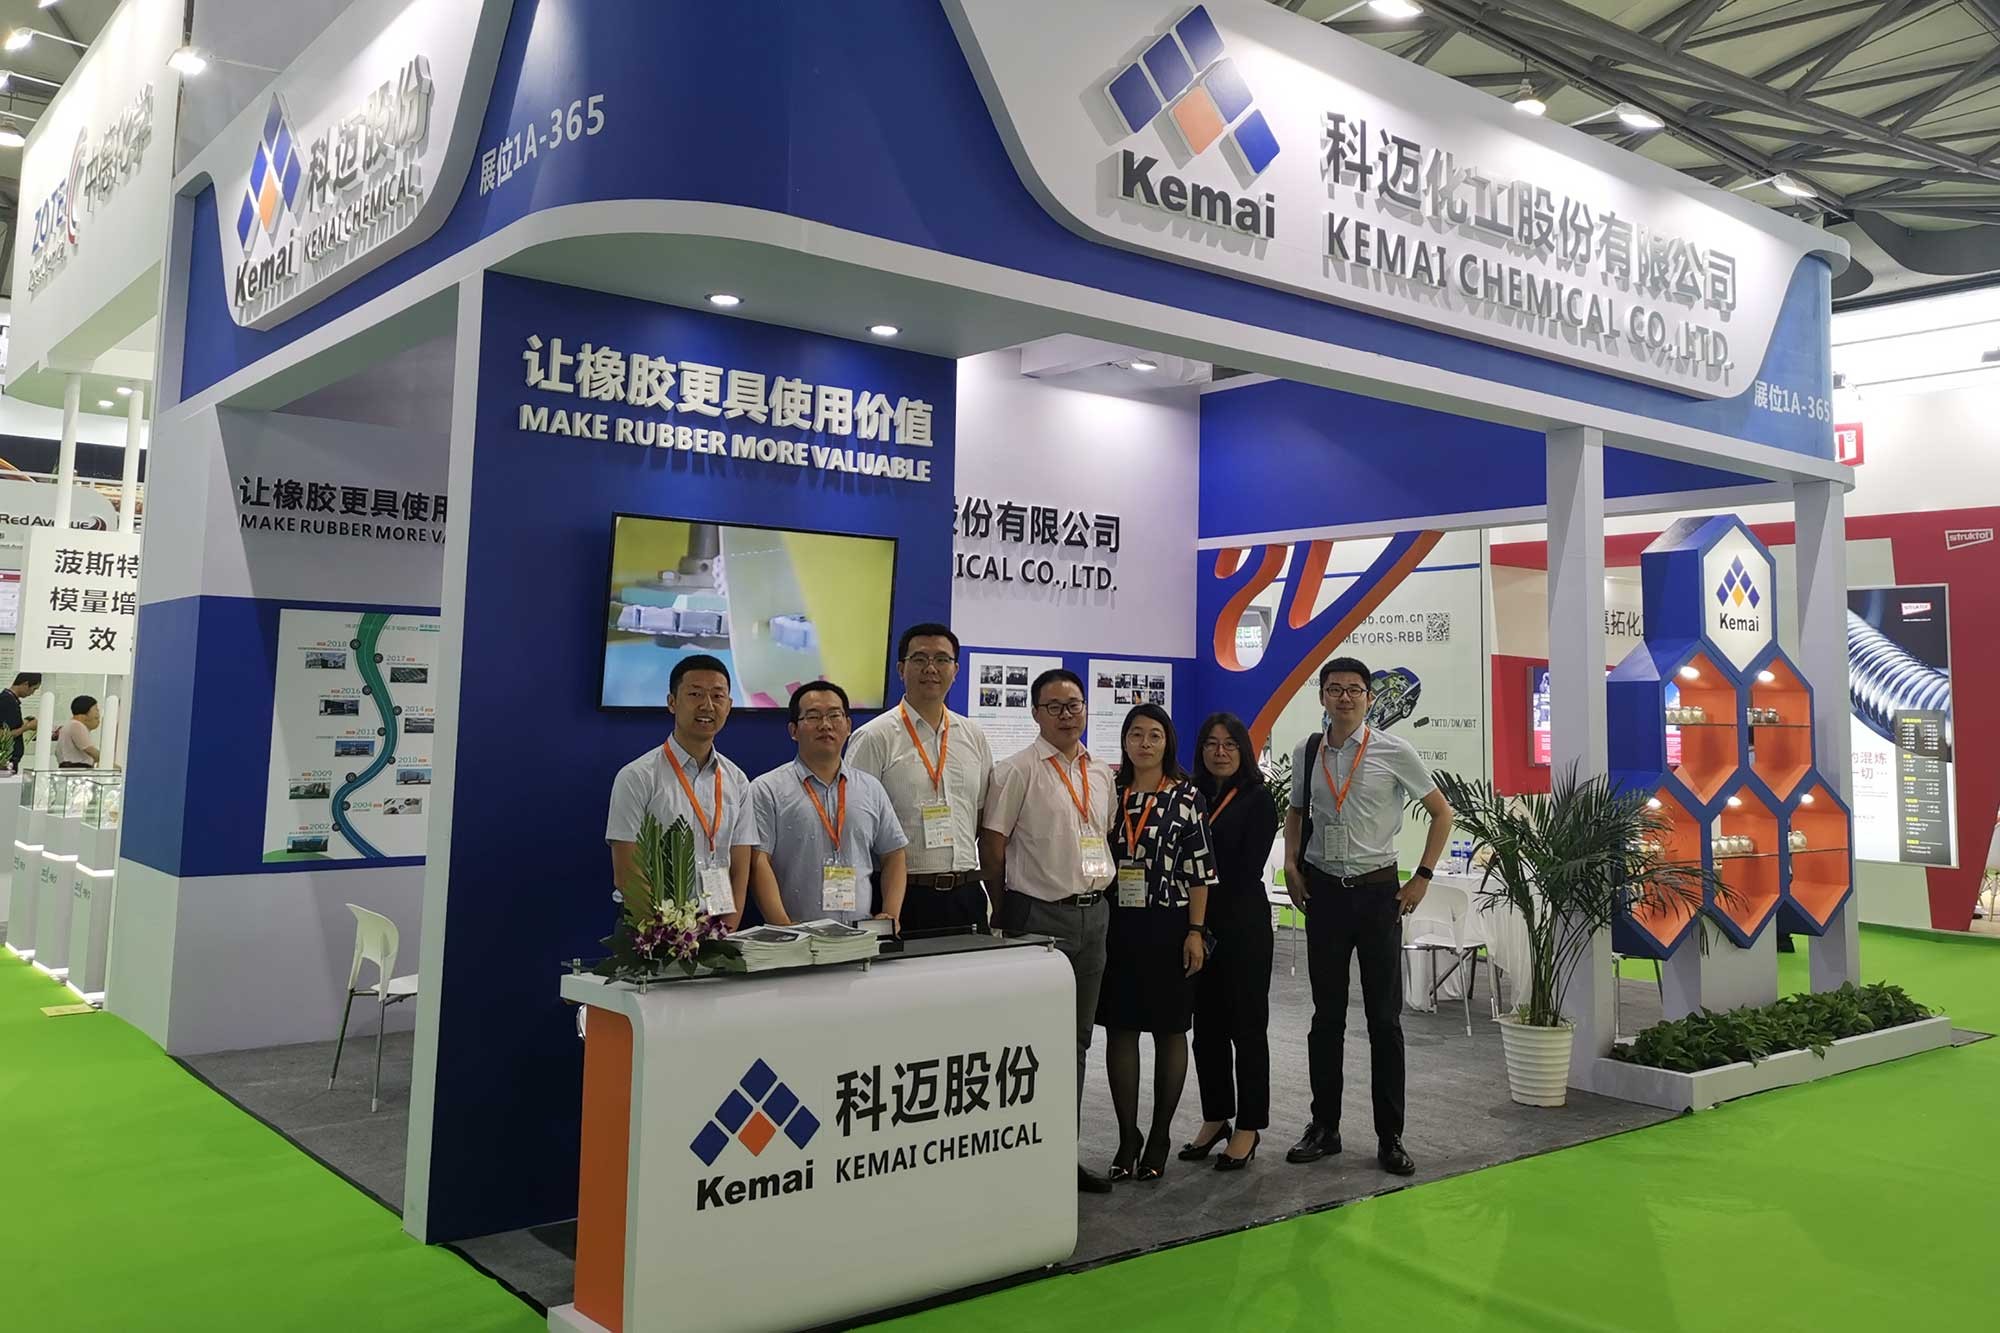 拉斯维加斯5357cc线路检测出席RubberTech2019中国国际拉斯维加斯5357cc线路检测技术展览会